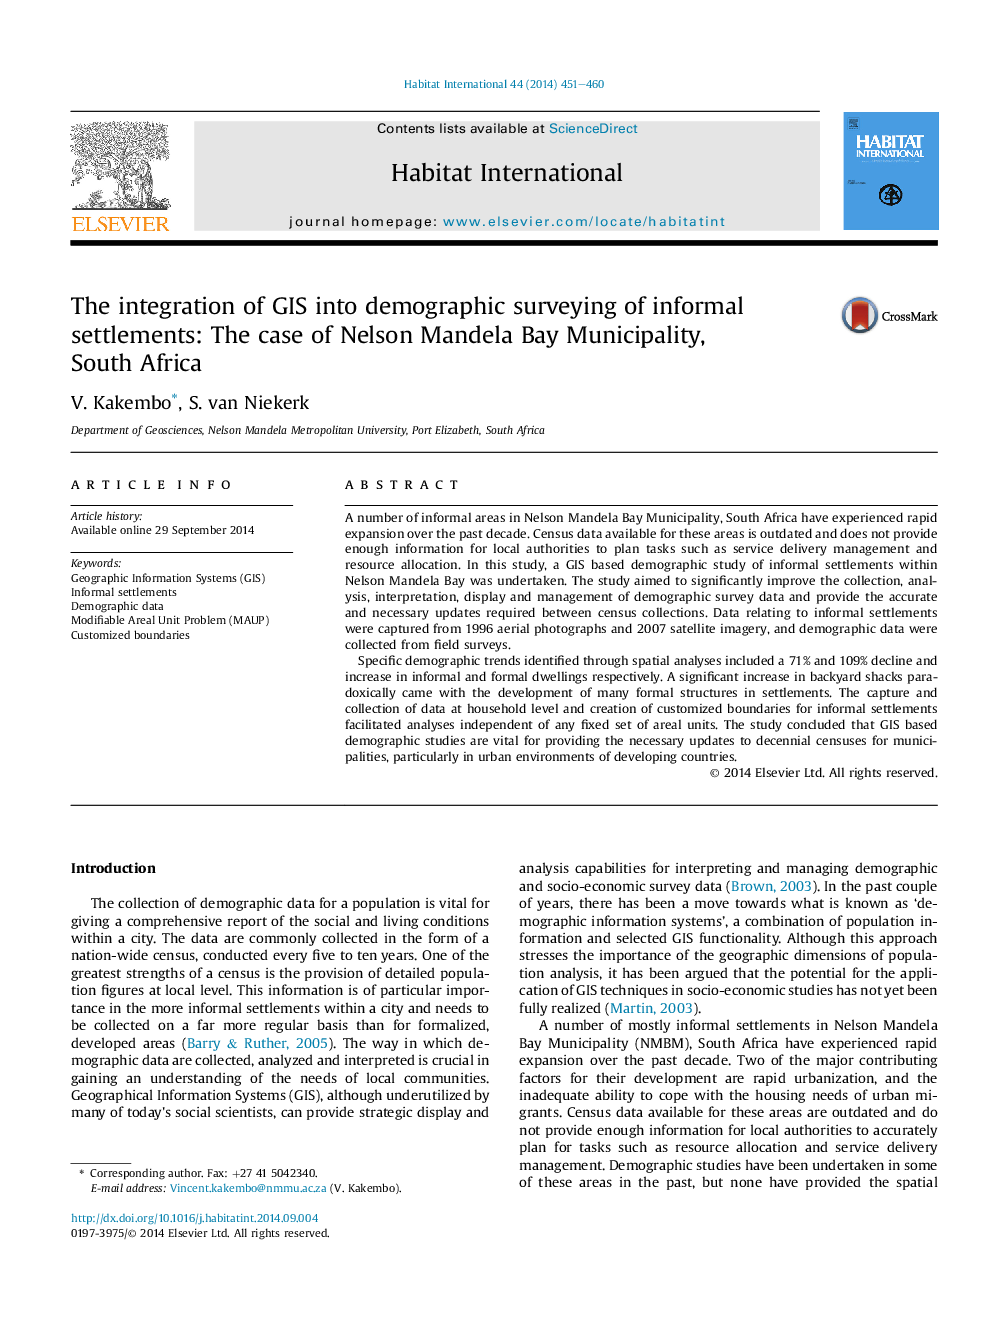 ادغام سیستم اطلاعات جغرافیایی به جمع آوری اطلاعات جمعیتی از سکونتگاه های غیر رسمی: مورد شهرداری نلسون مینا خلیج، آفریقای جنوبی 